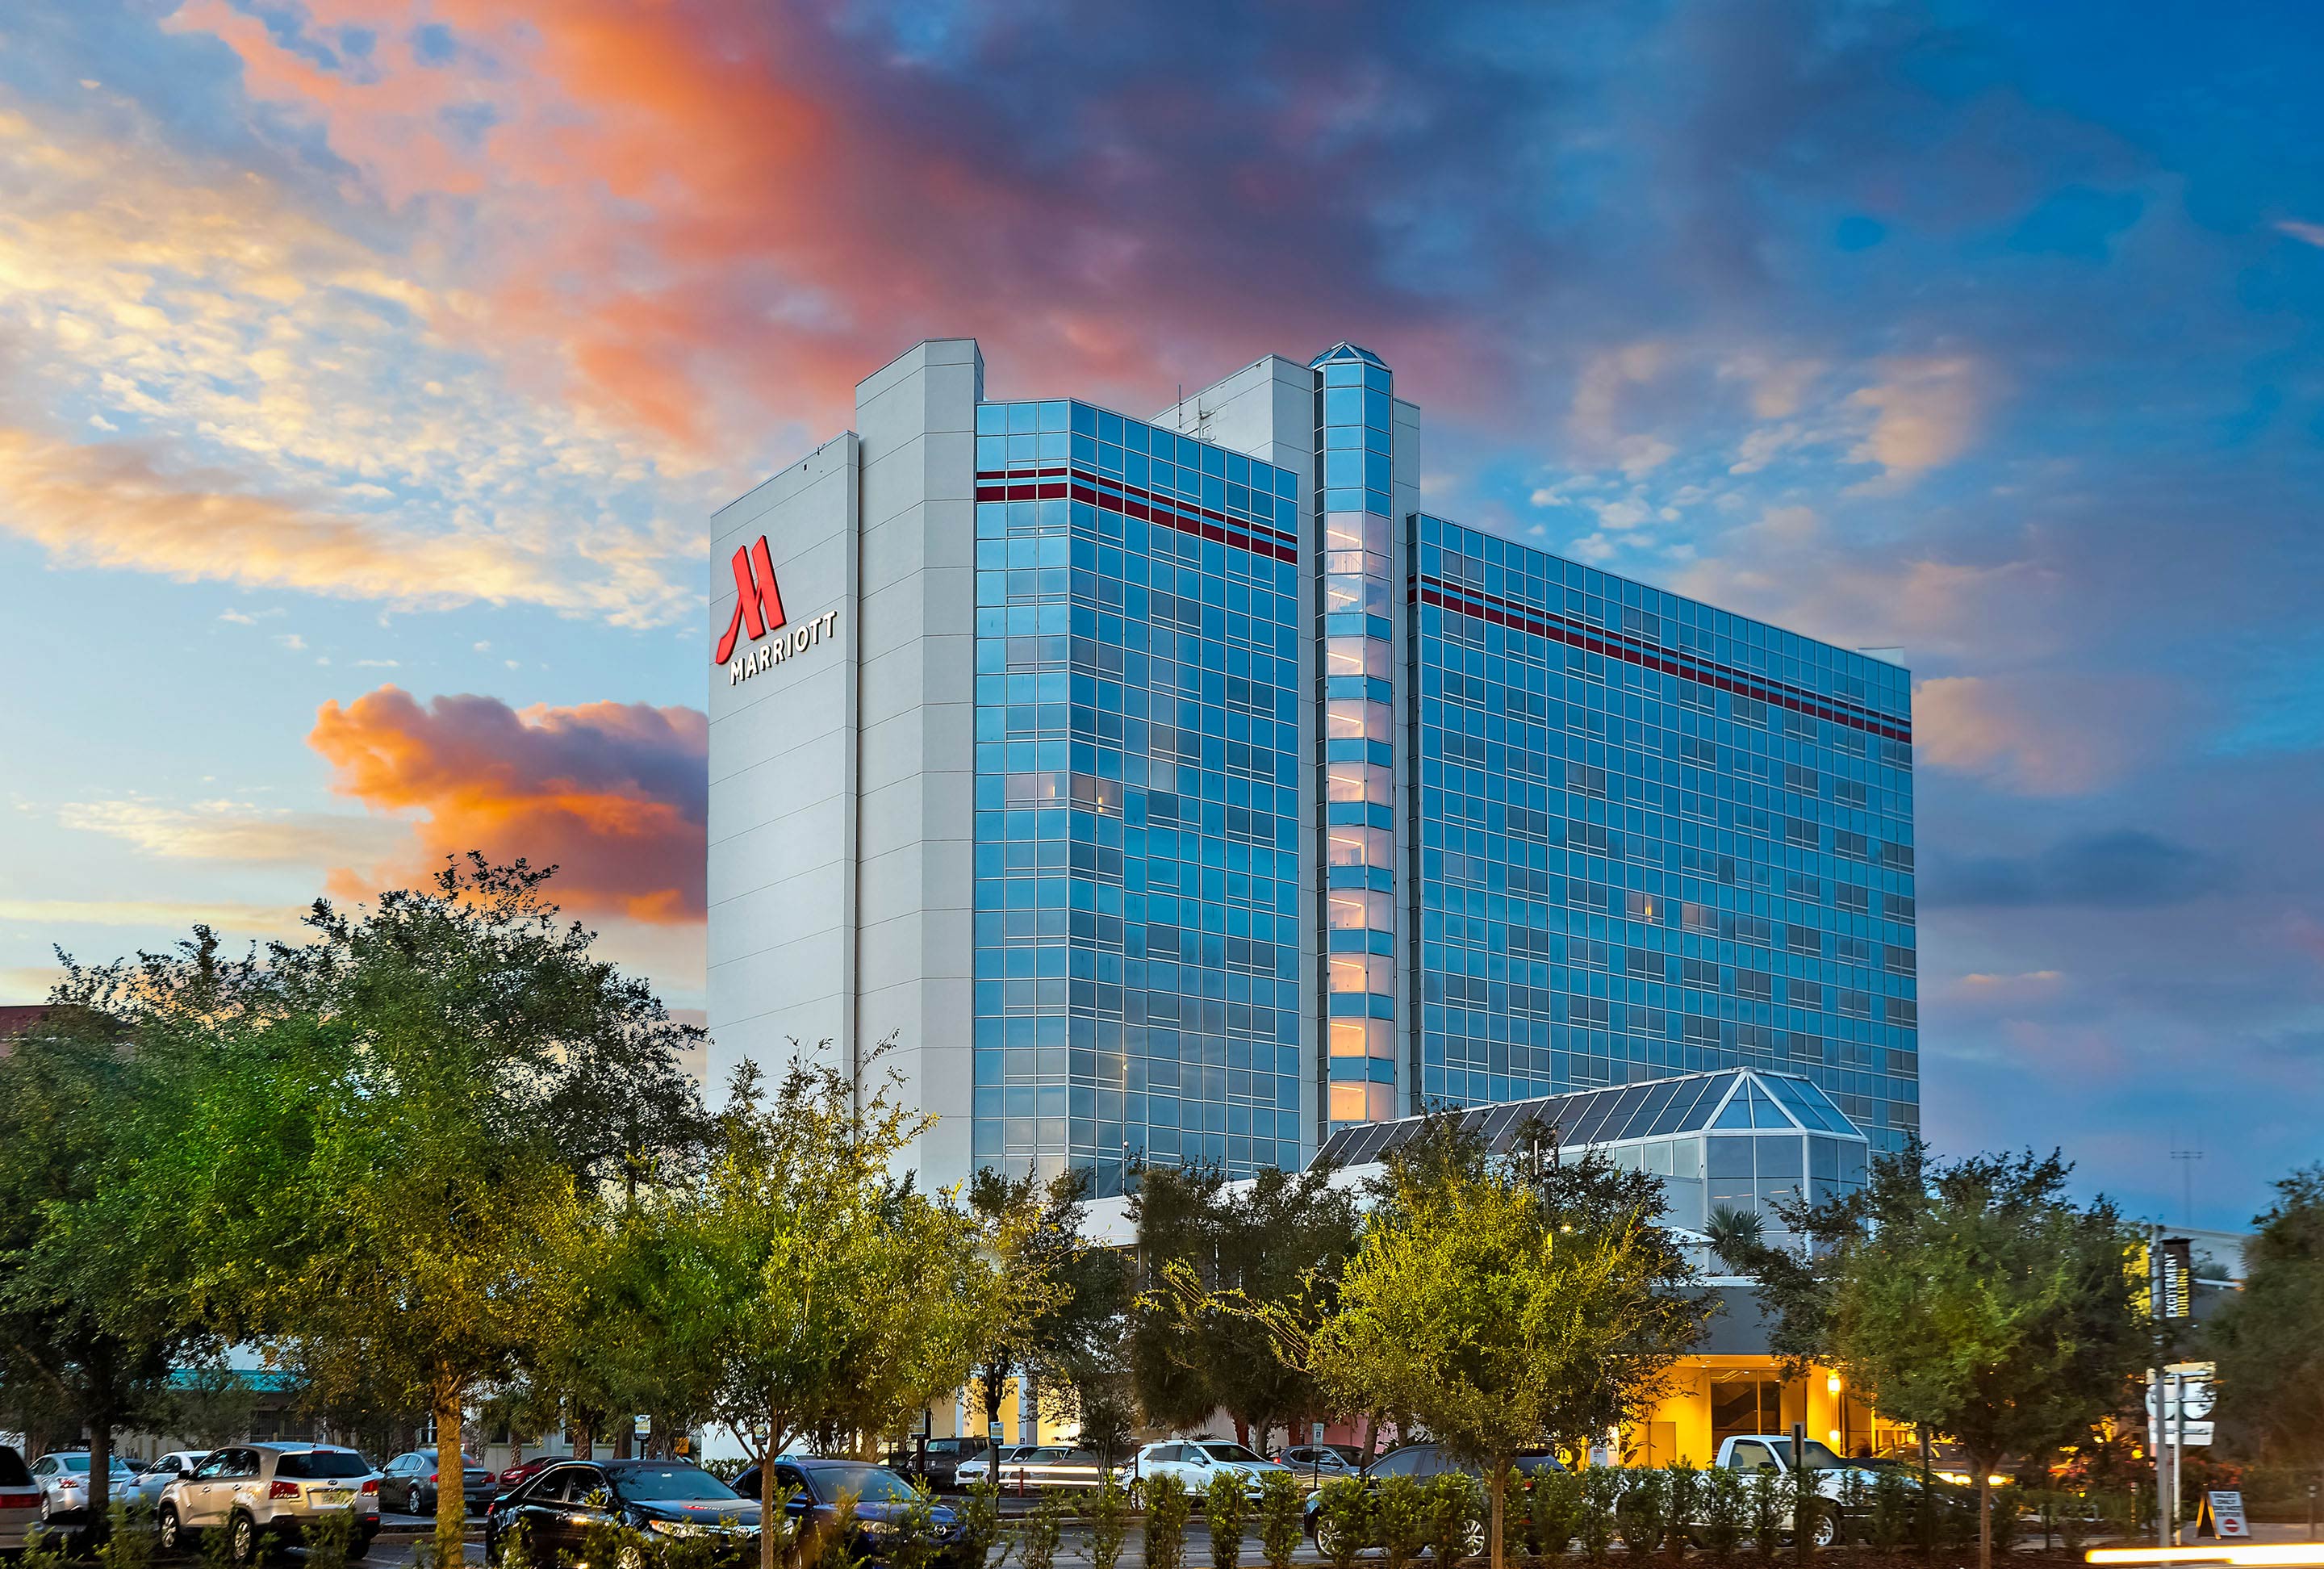 Открытие 30 новых люксовых отелей – главная задача Marriott на 2020 год